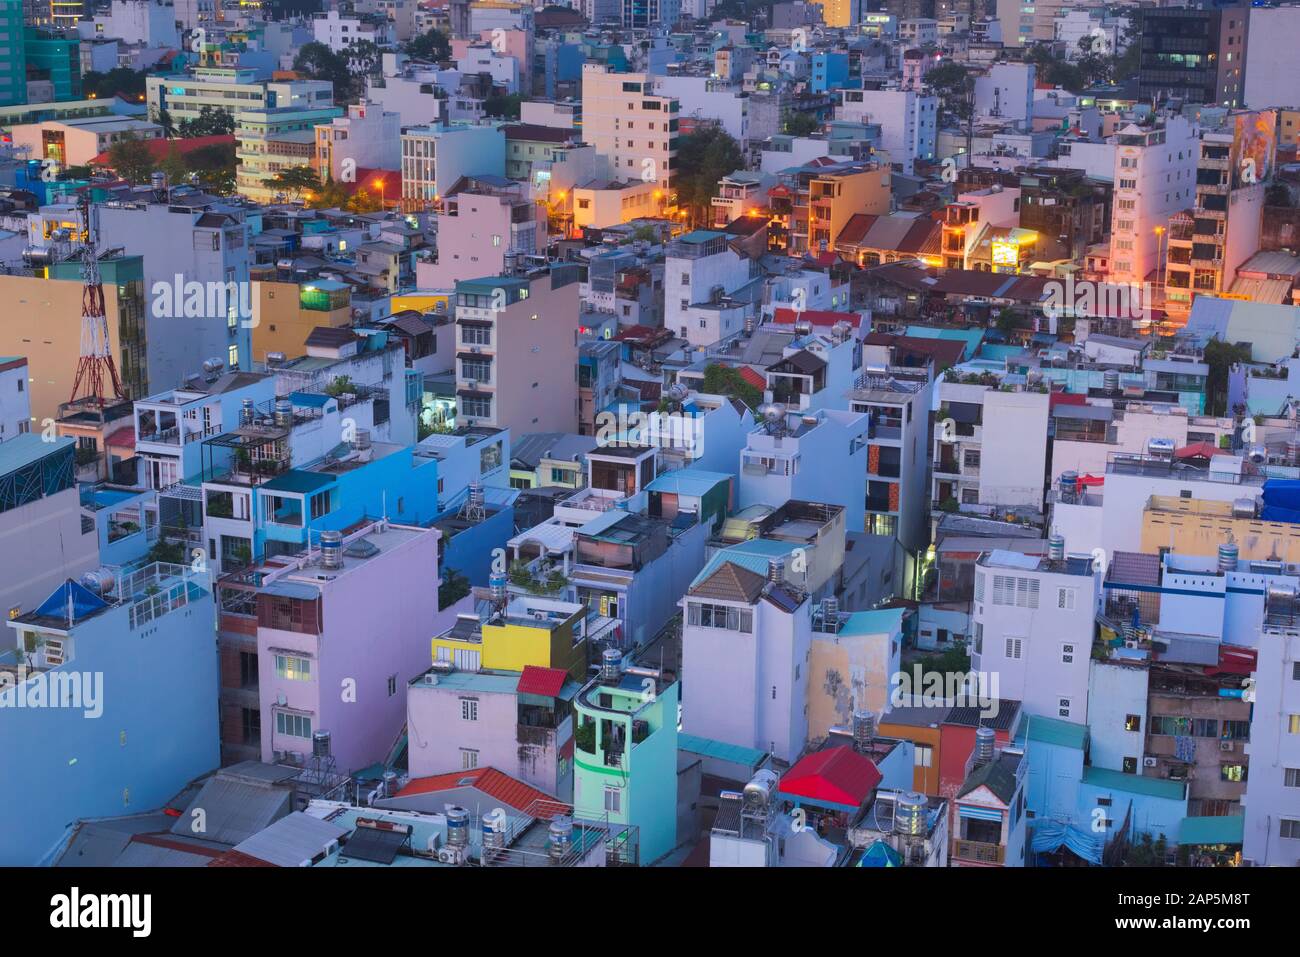 Apartmentgebäude in einem überbevölkerten Teil von Saigon, Vietnam (Ho-Chi-Minh-Stadt). Erhöhte Sicht bei Einbruch der Dunkelheit. Stockfoto